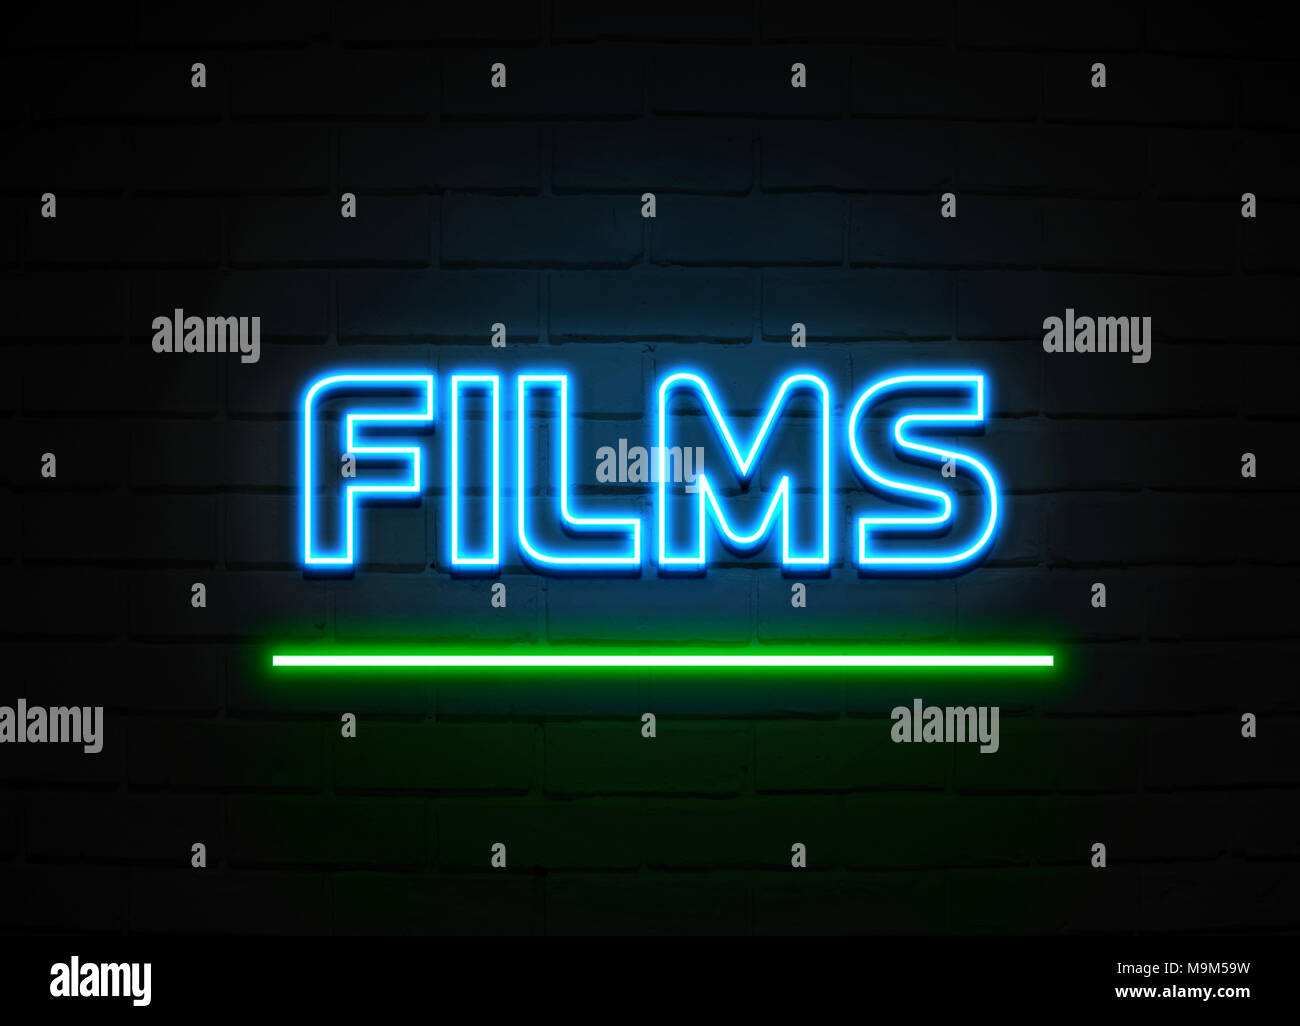 Films en néon - Glowing Neon Sign sur mur brickwall - rendu 3D illustration libres de droits. Banque D'Images